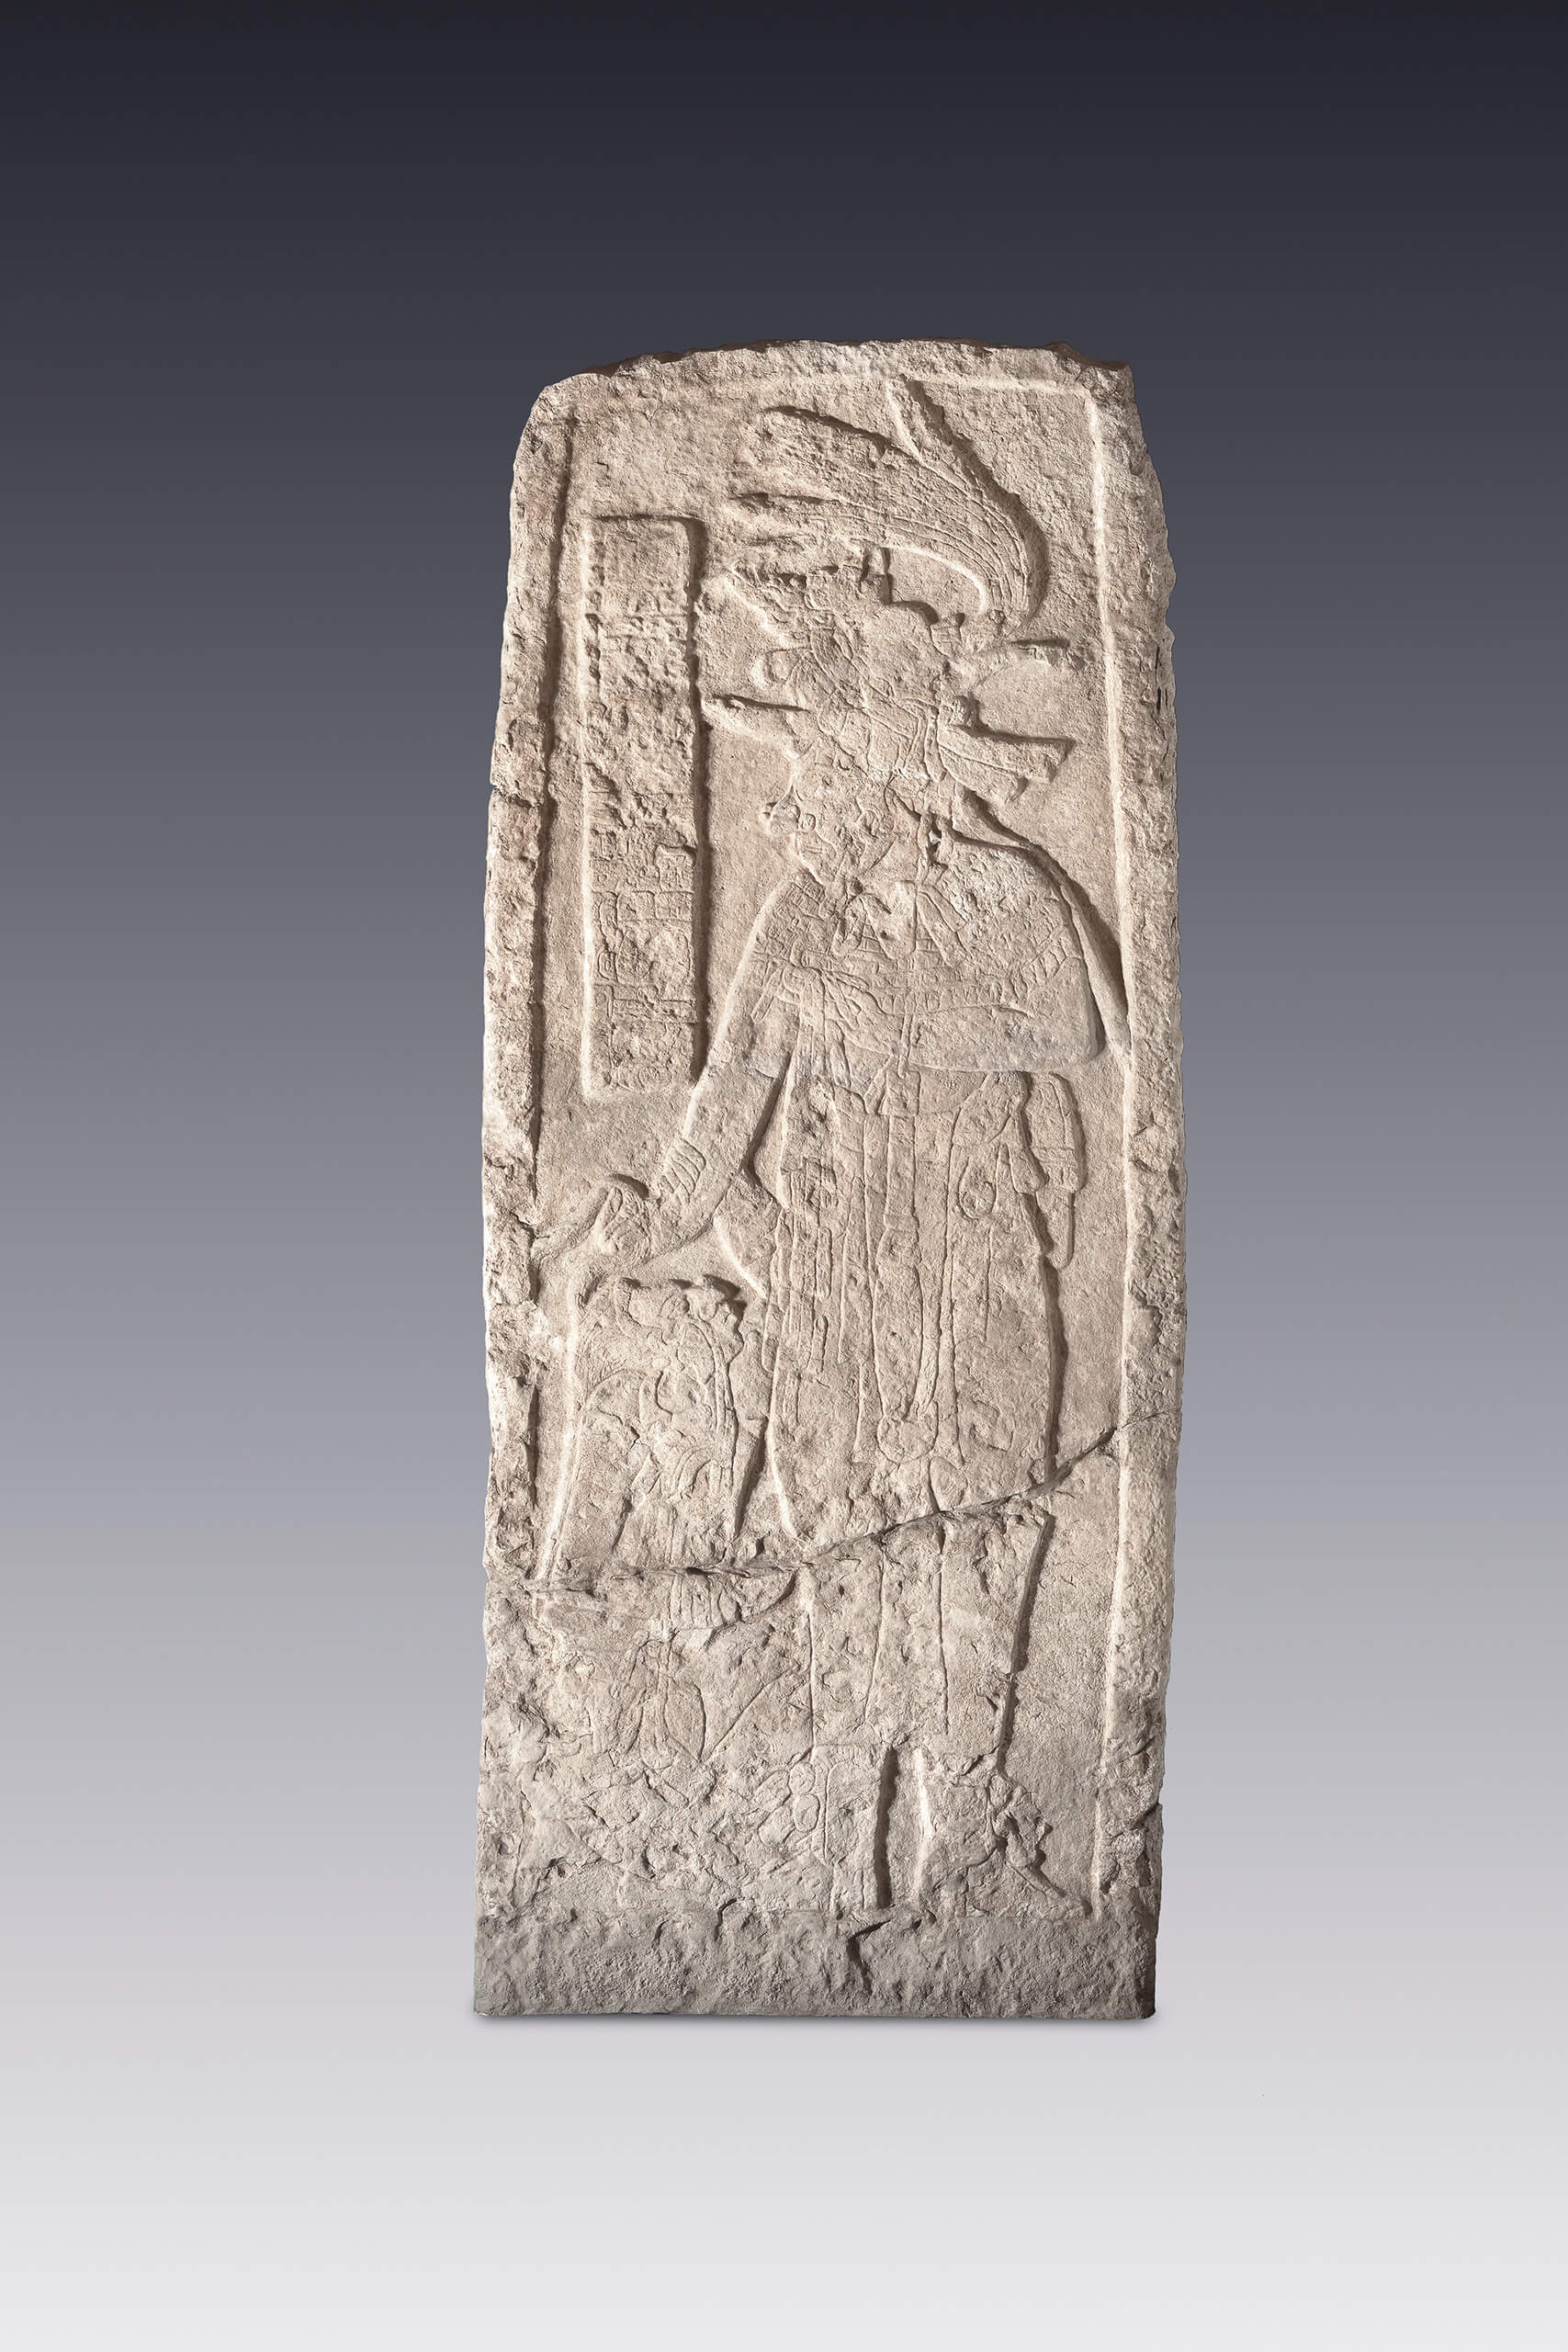 Estela que representa un gobernante con un cautivo | El México antiguo. Salas de Arte Prehispánico | Museo Amparo, Puebla